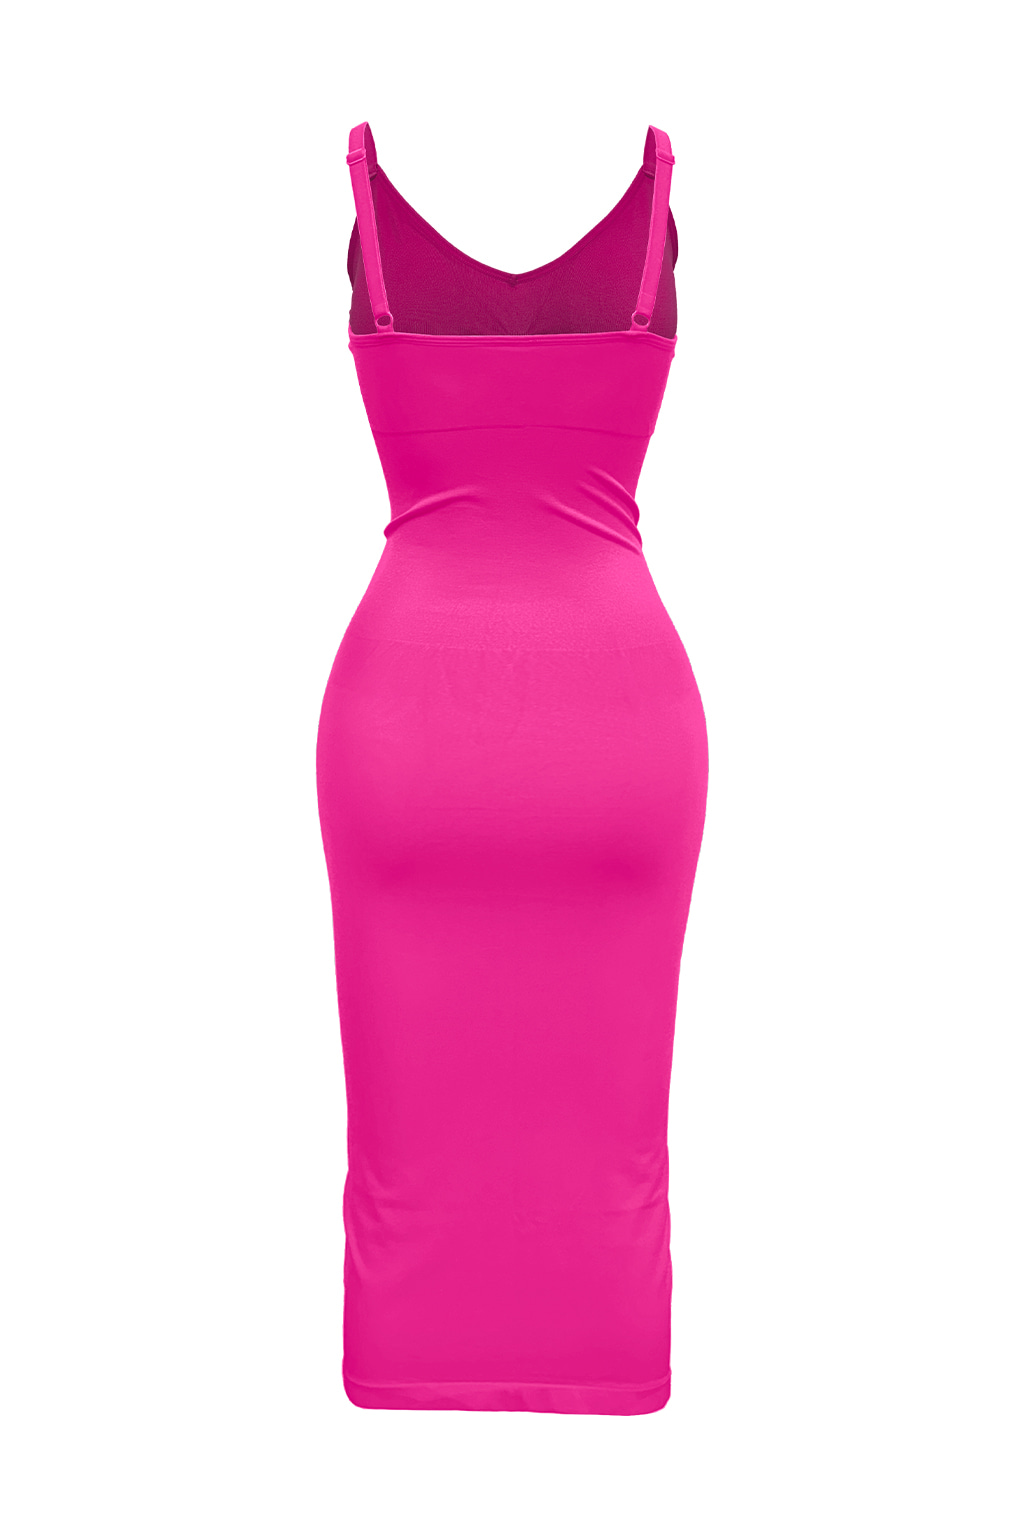 Mochi Glamour Deep V-Neck Dress Hot Pink